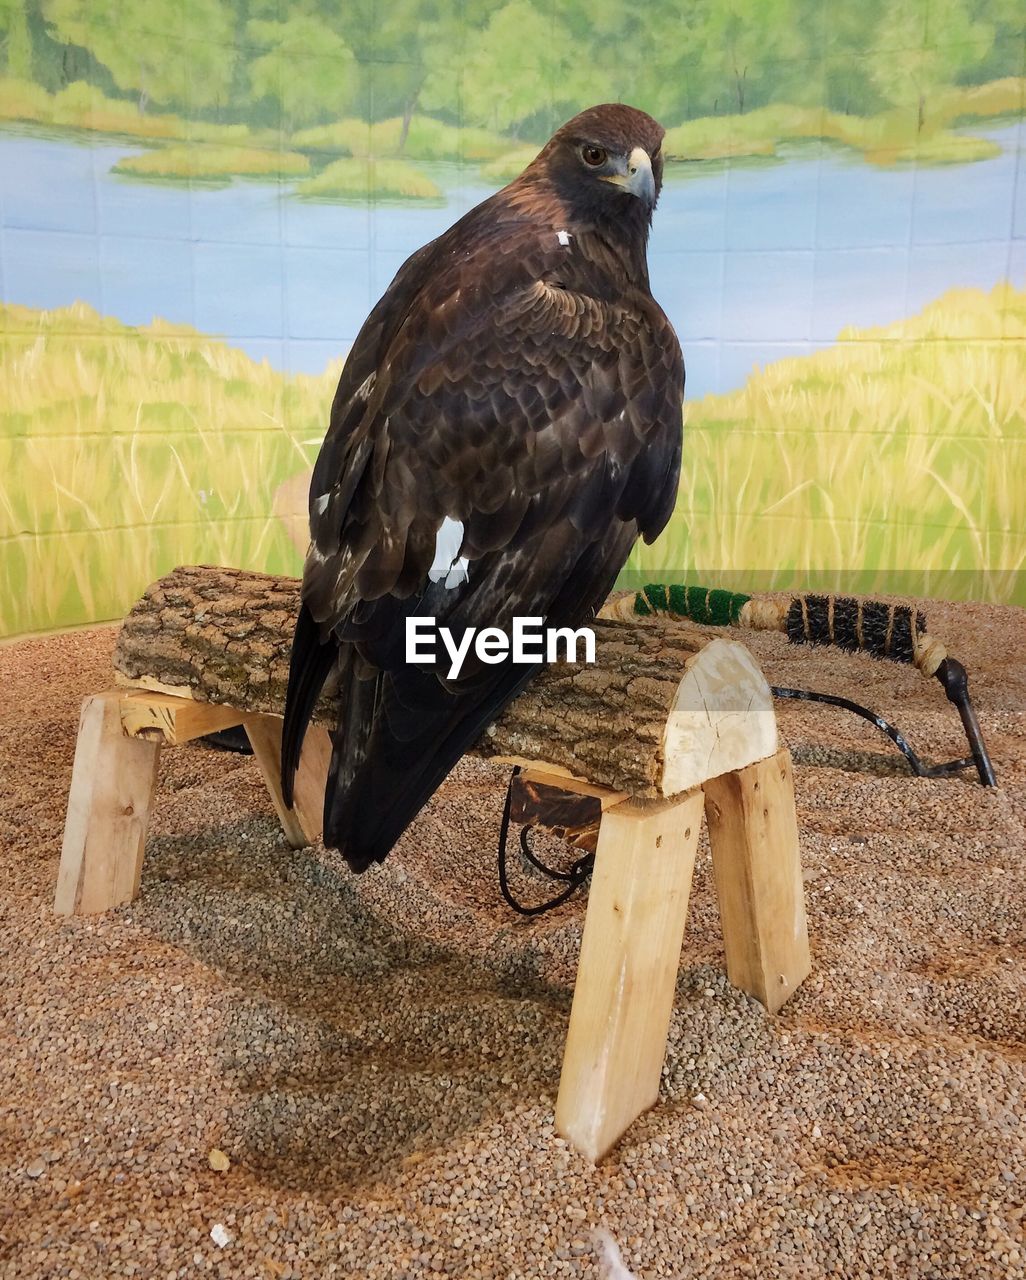 Portrait of eagle in studio